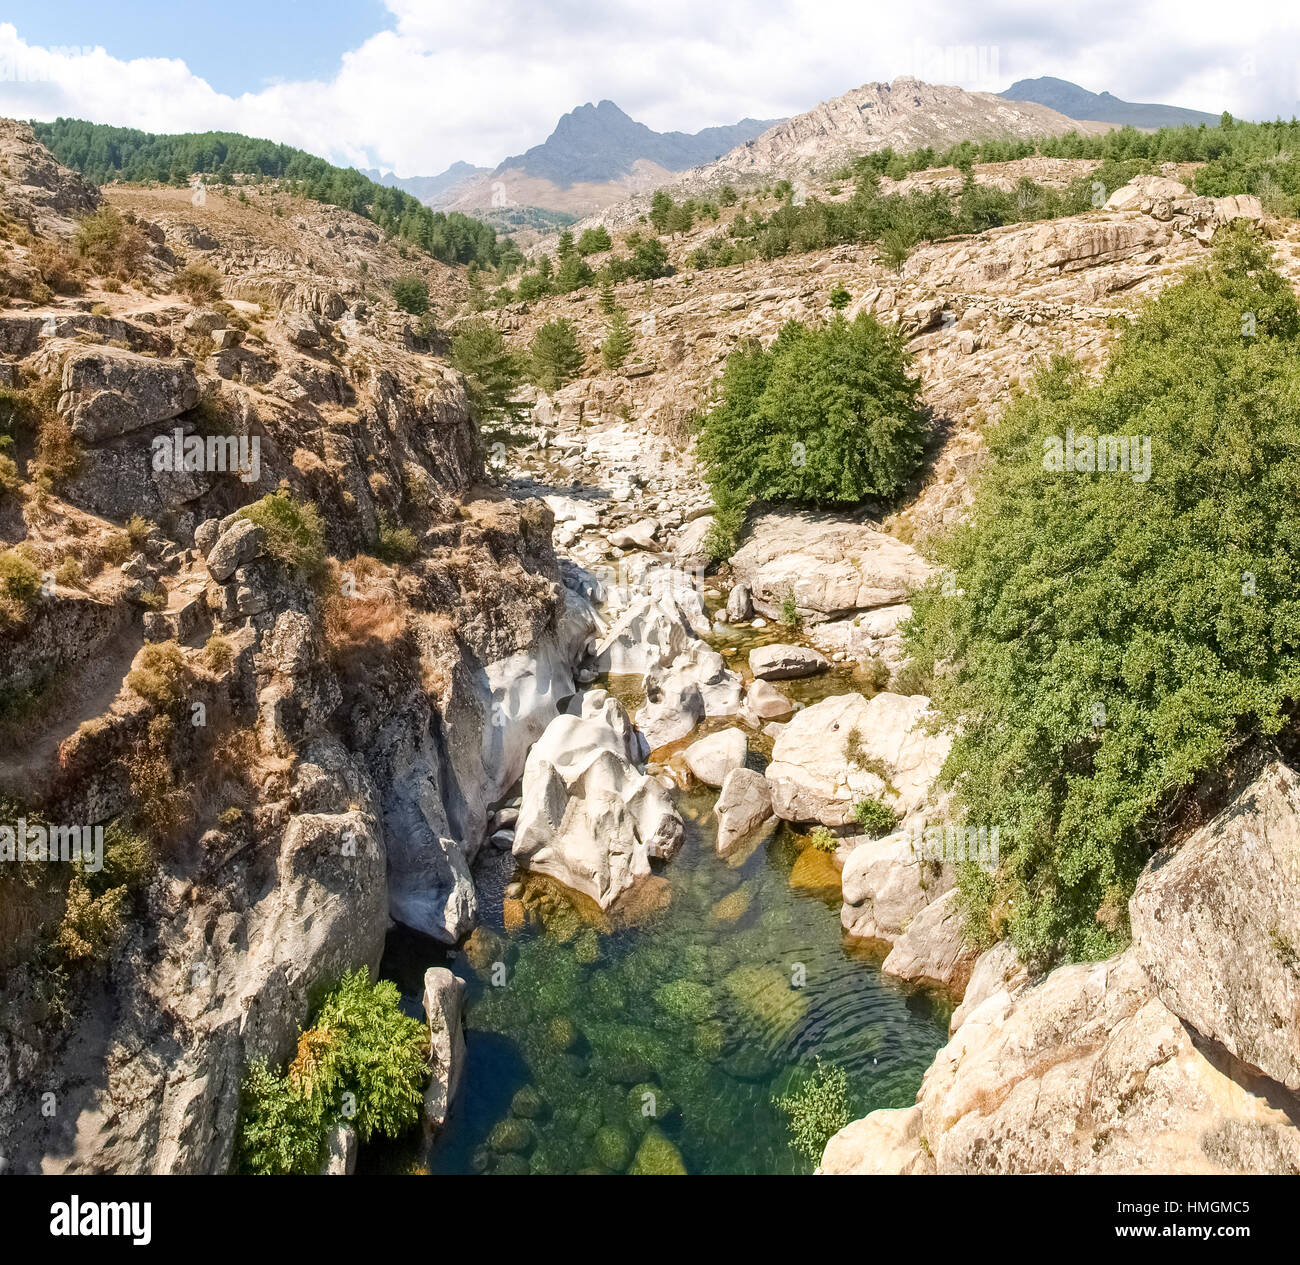 Corse - Corse, France : image de la vallée de la rivière Golo Banque D'Images